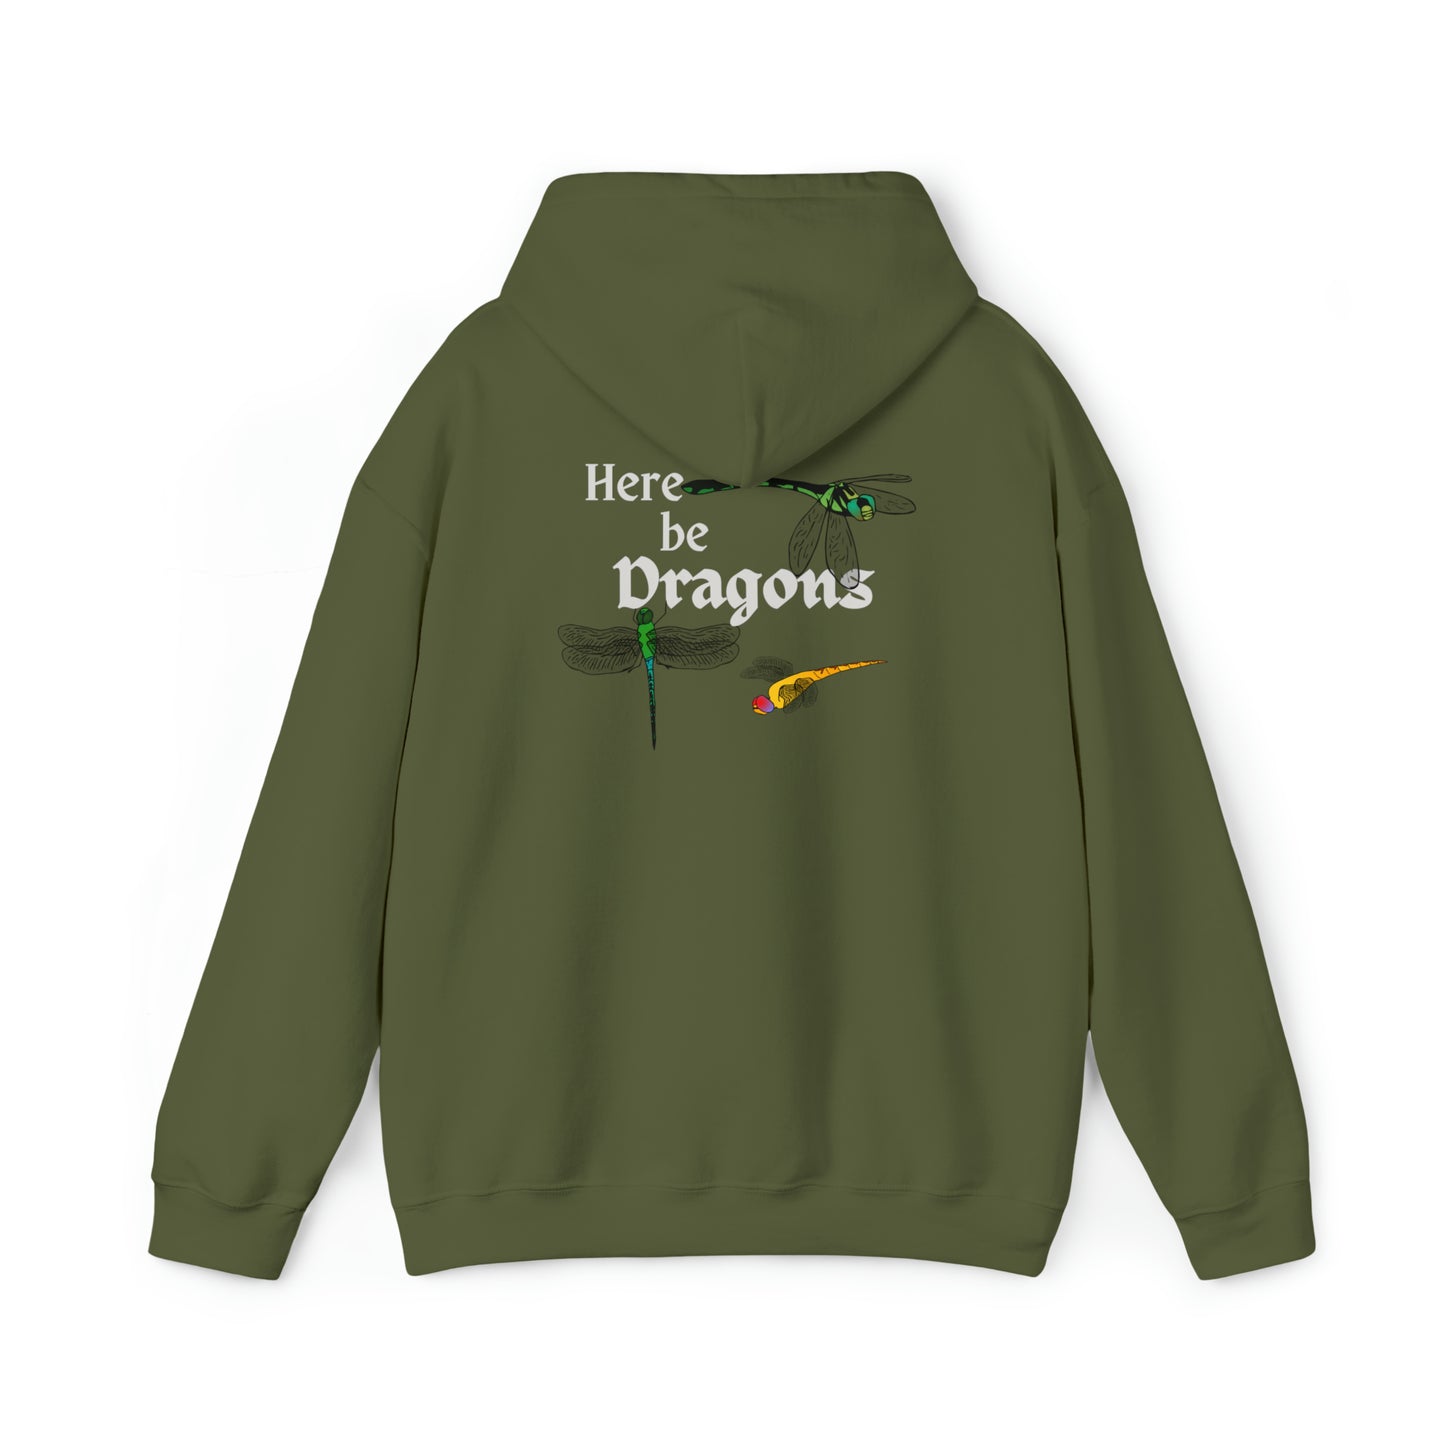 "Here be Dragons" Hoodie